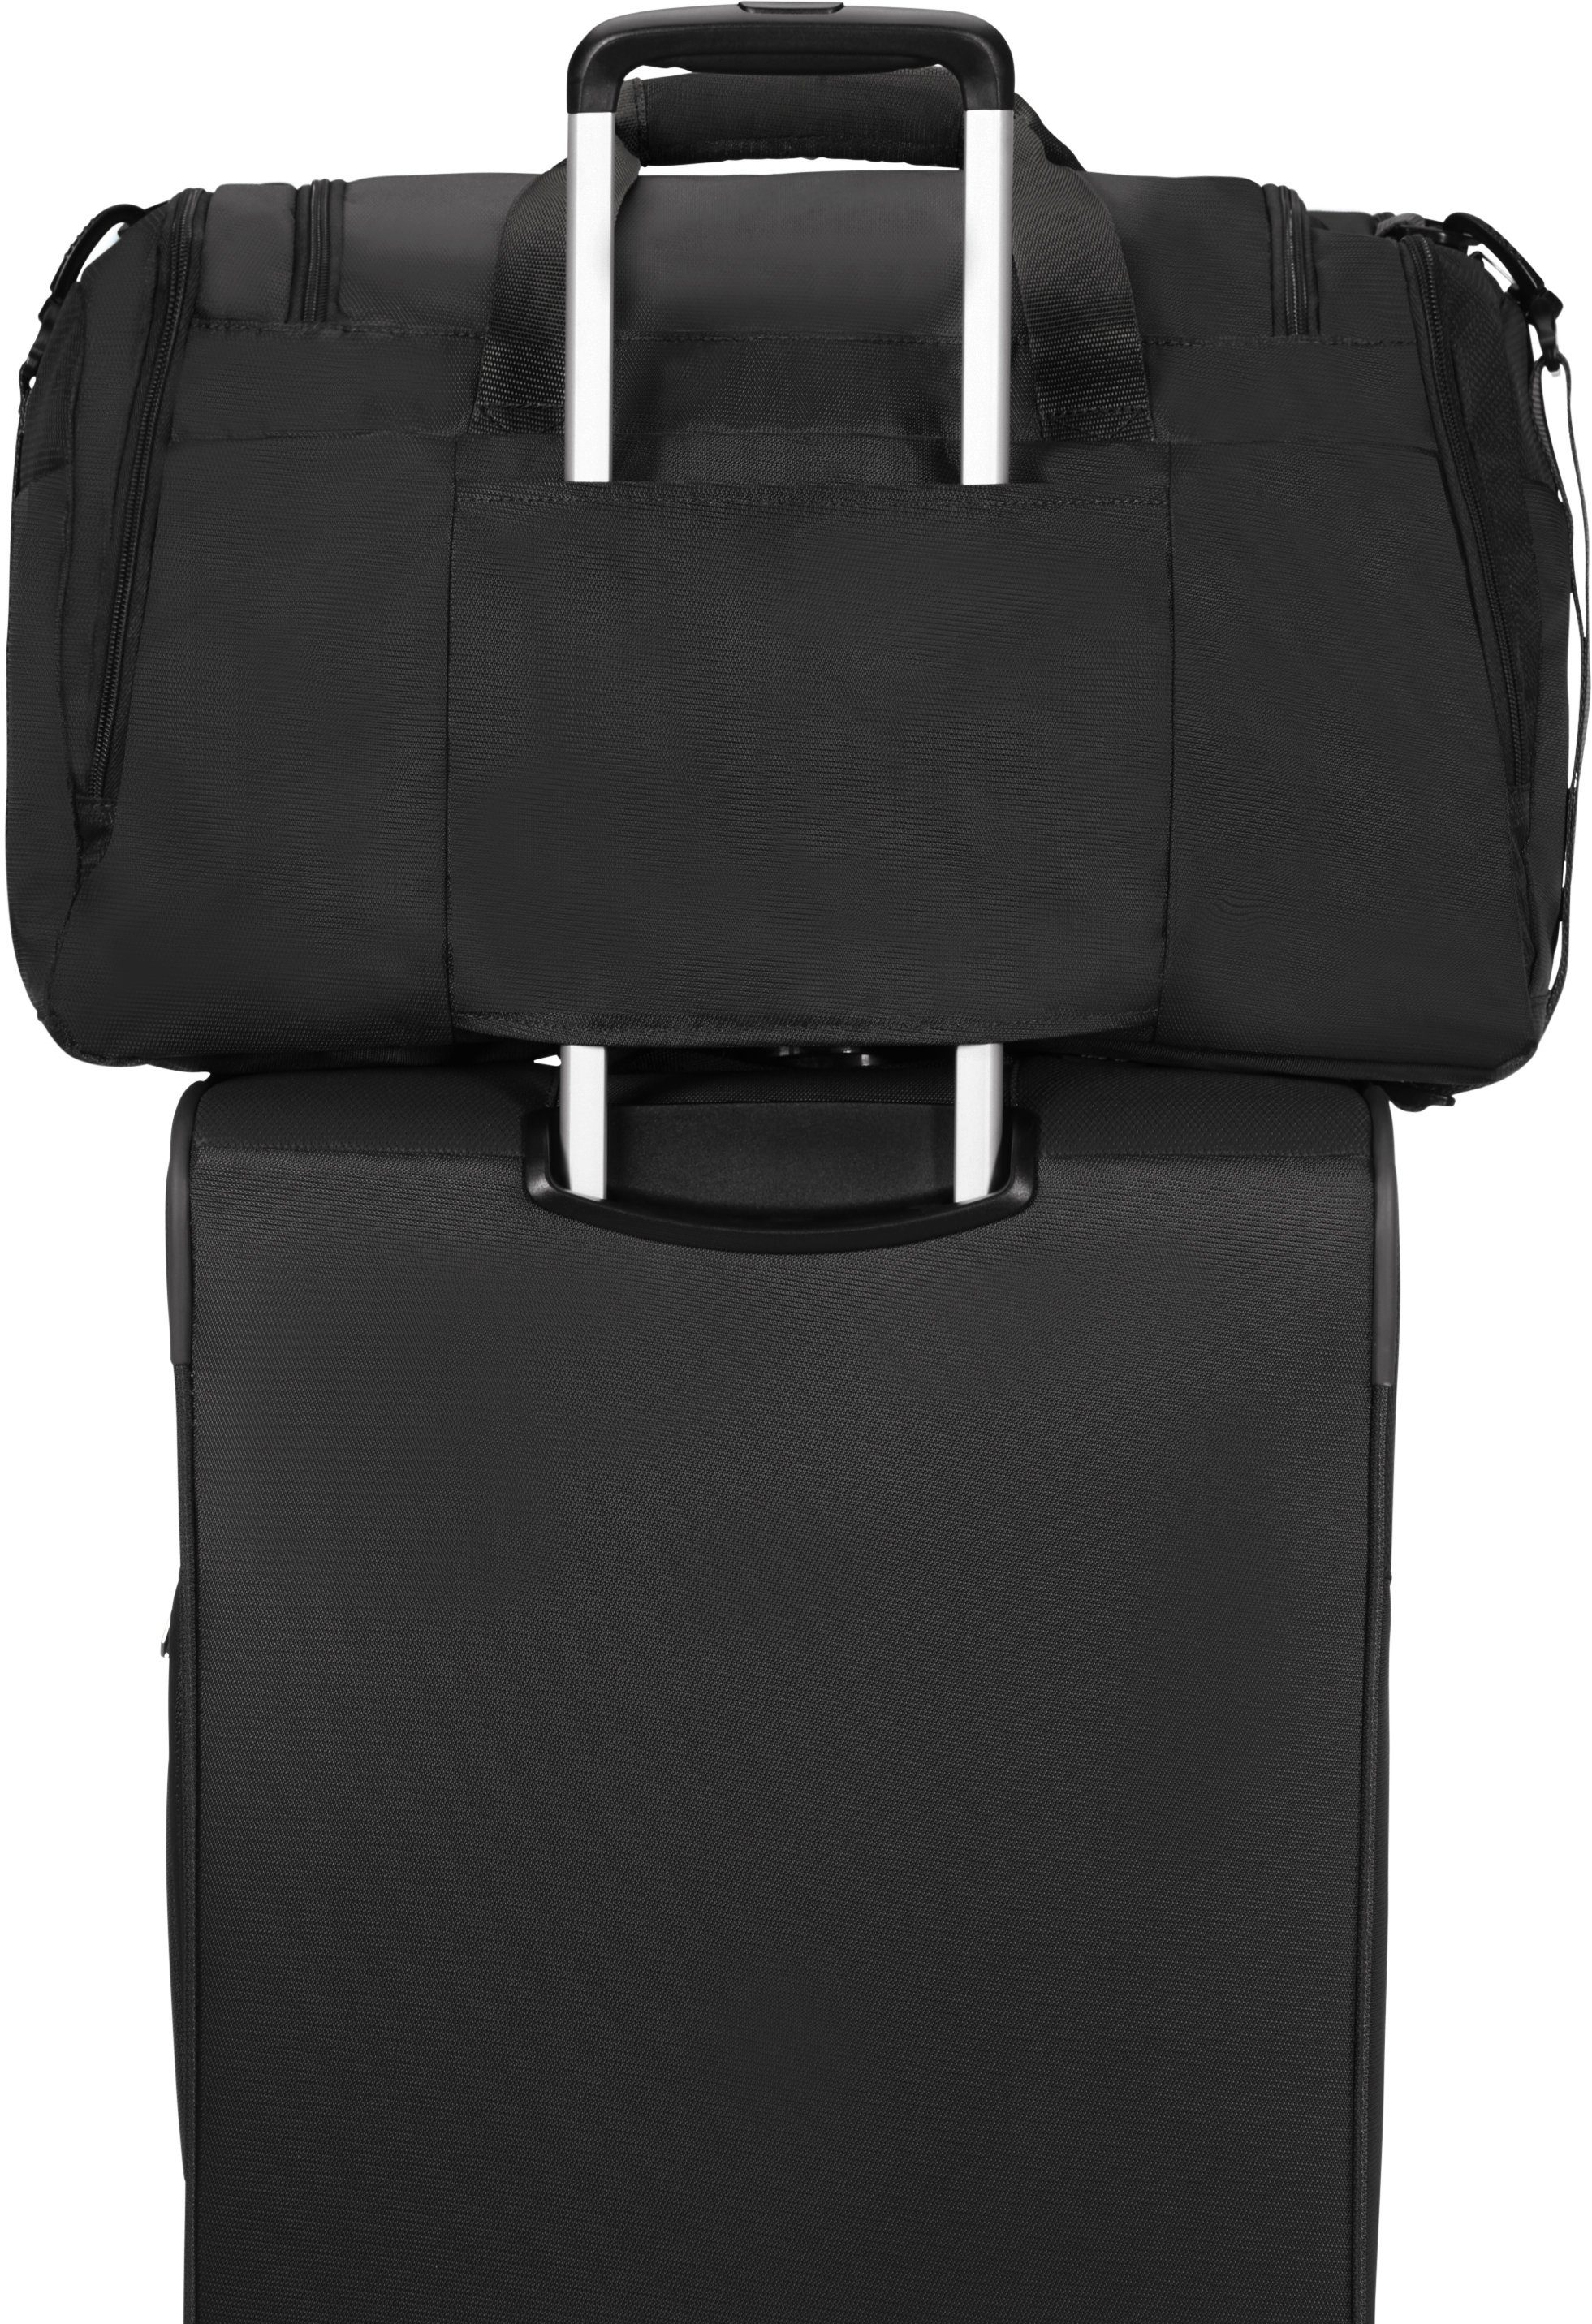 American Tourister® schwarz Reisetasche Trolley-Aufsteck-System mit Summerfunk